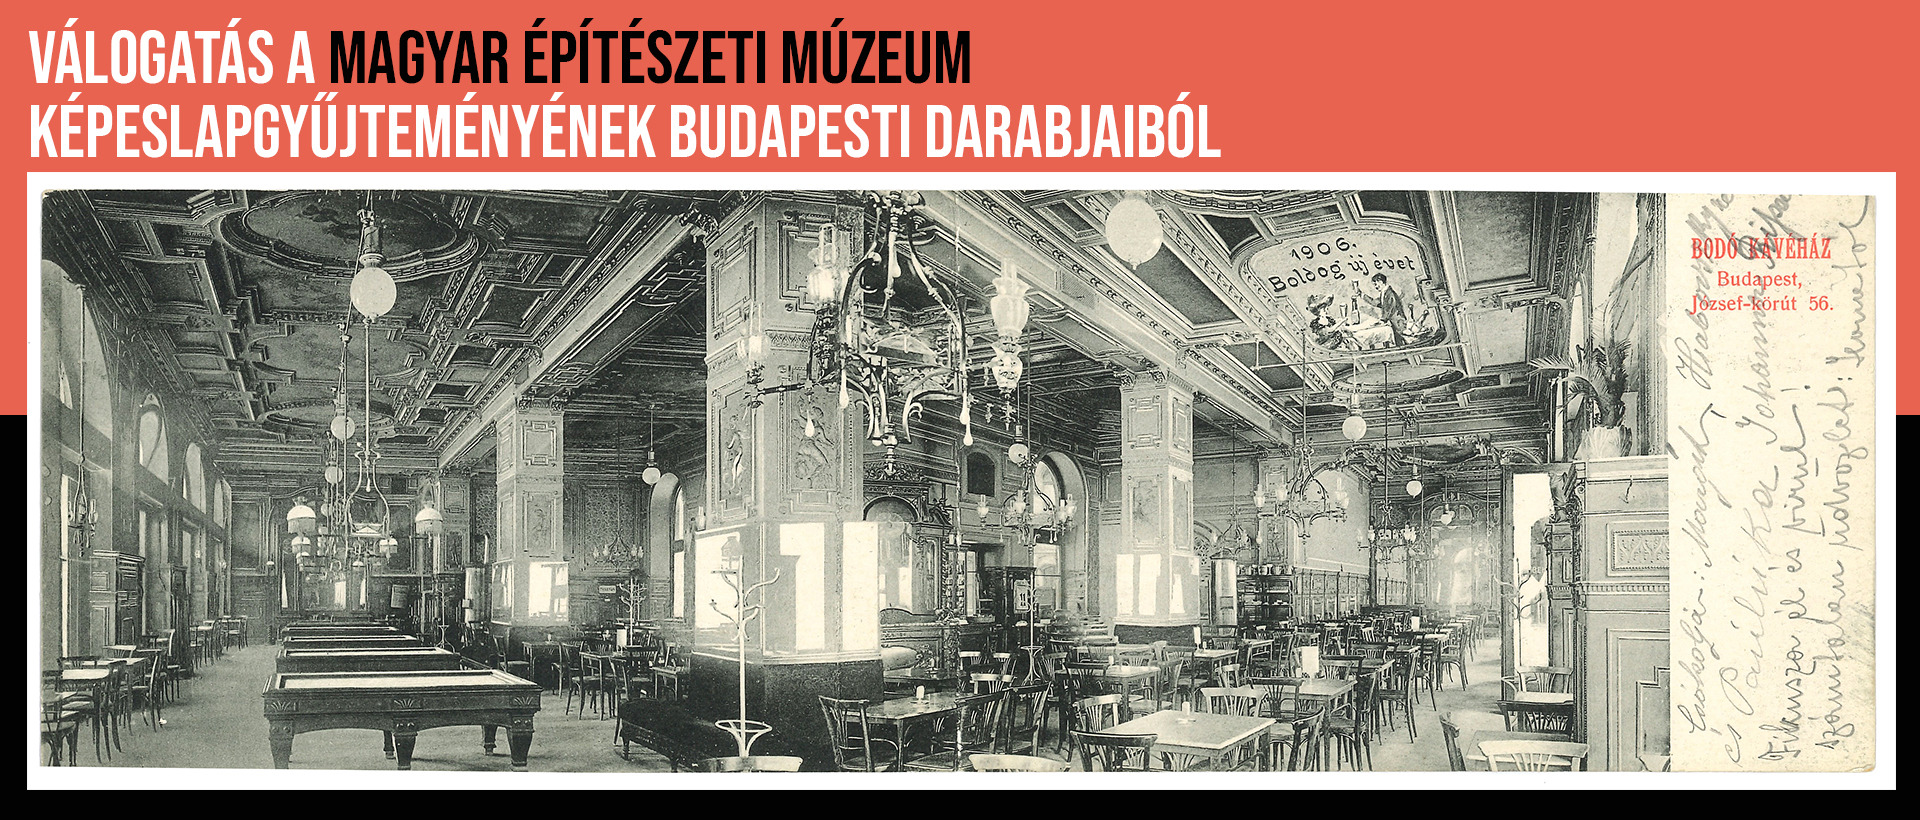 Válogatás a Magyar Építészeti Múzeum képeslapgyűjteményének budapesti darabjaiból